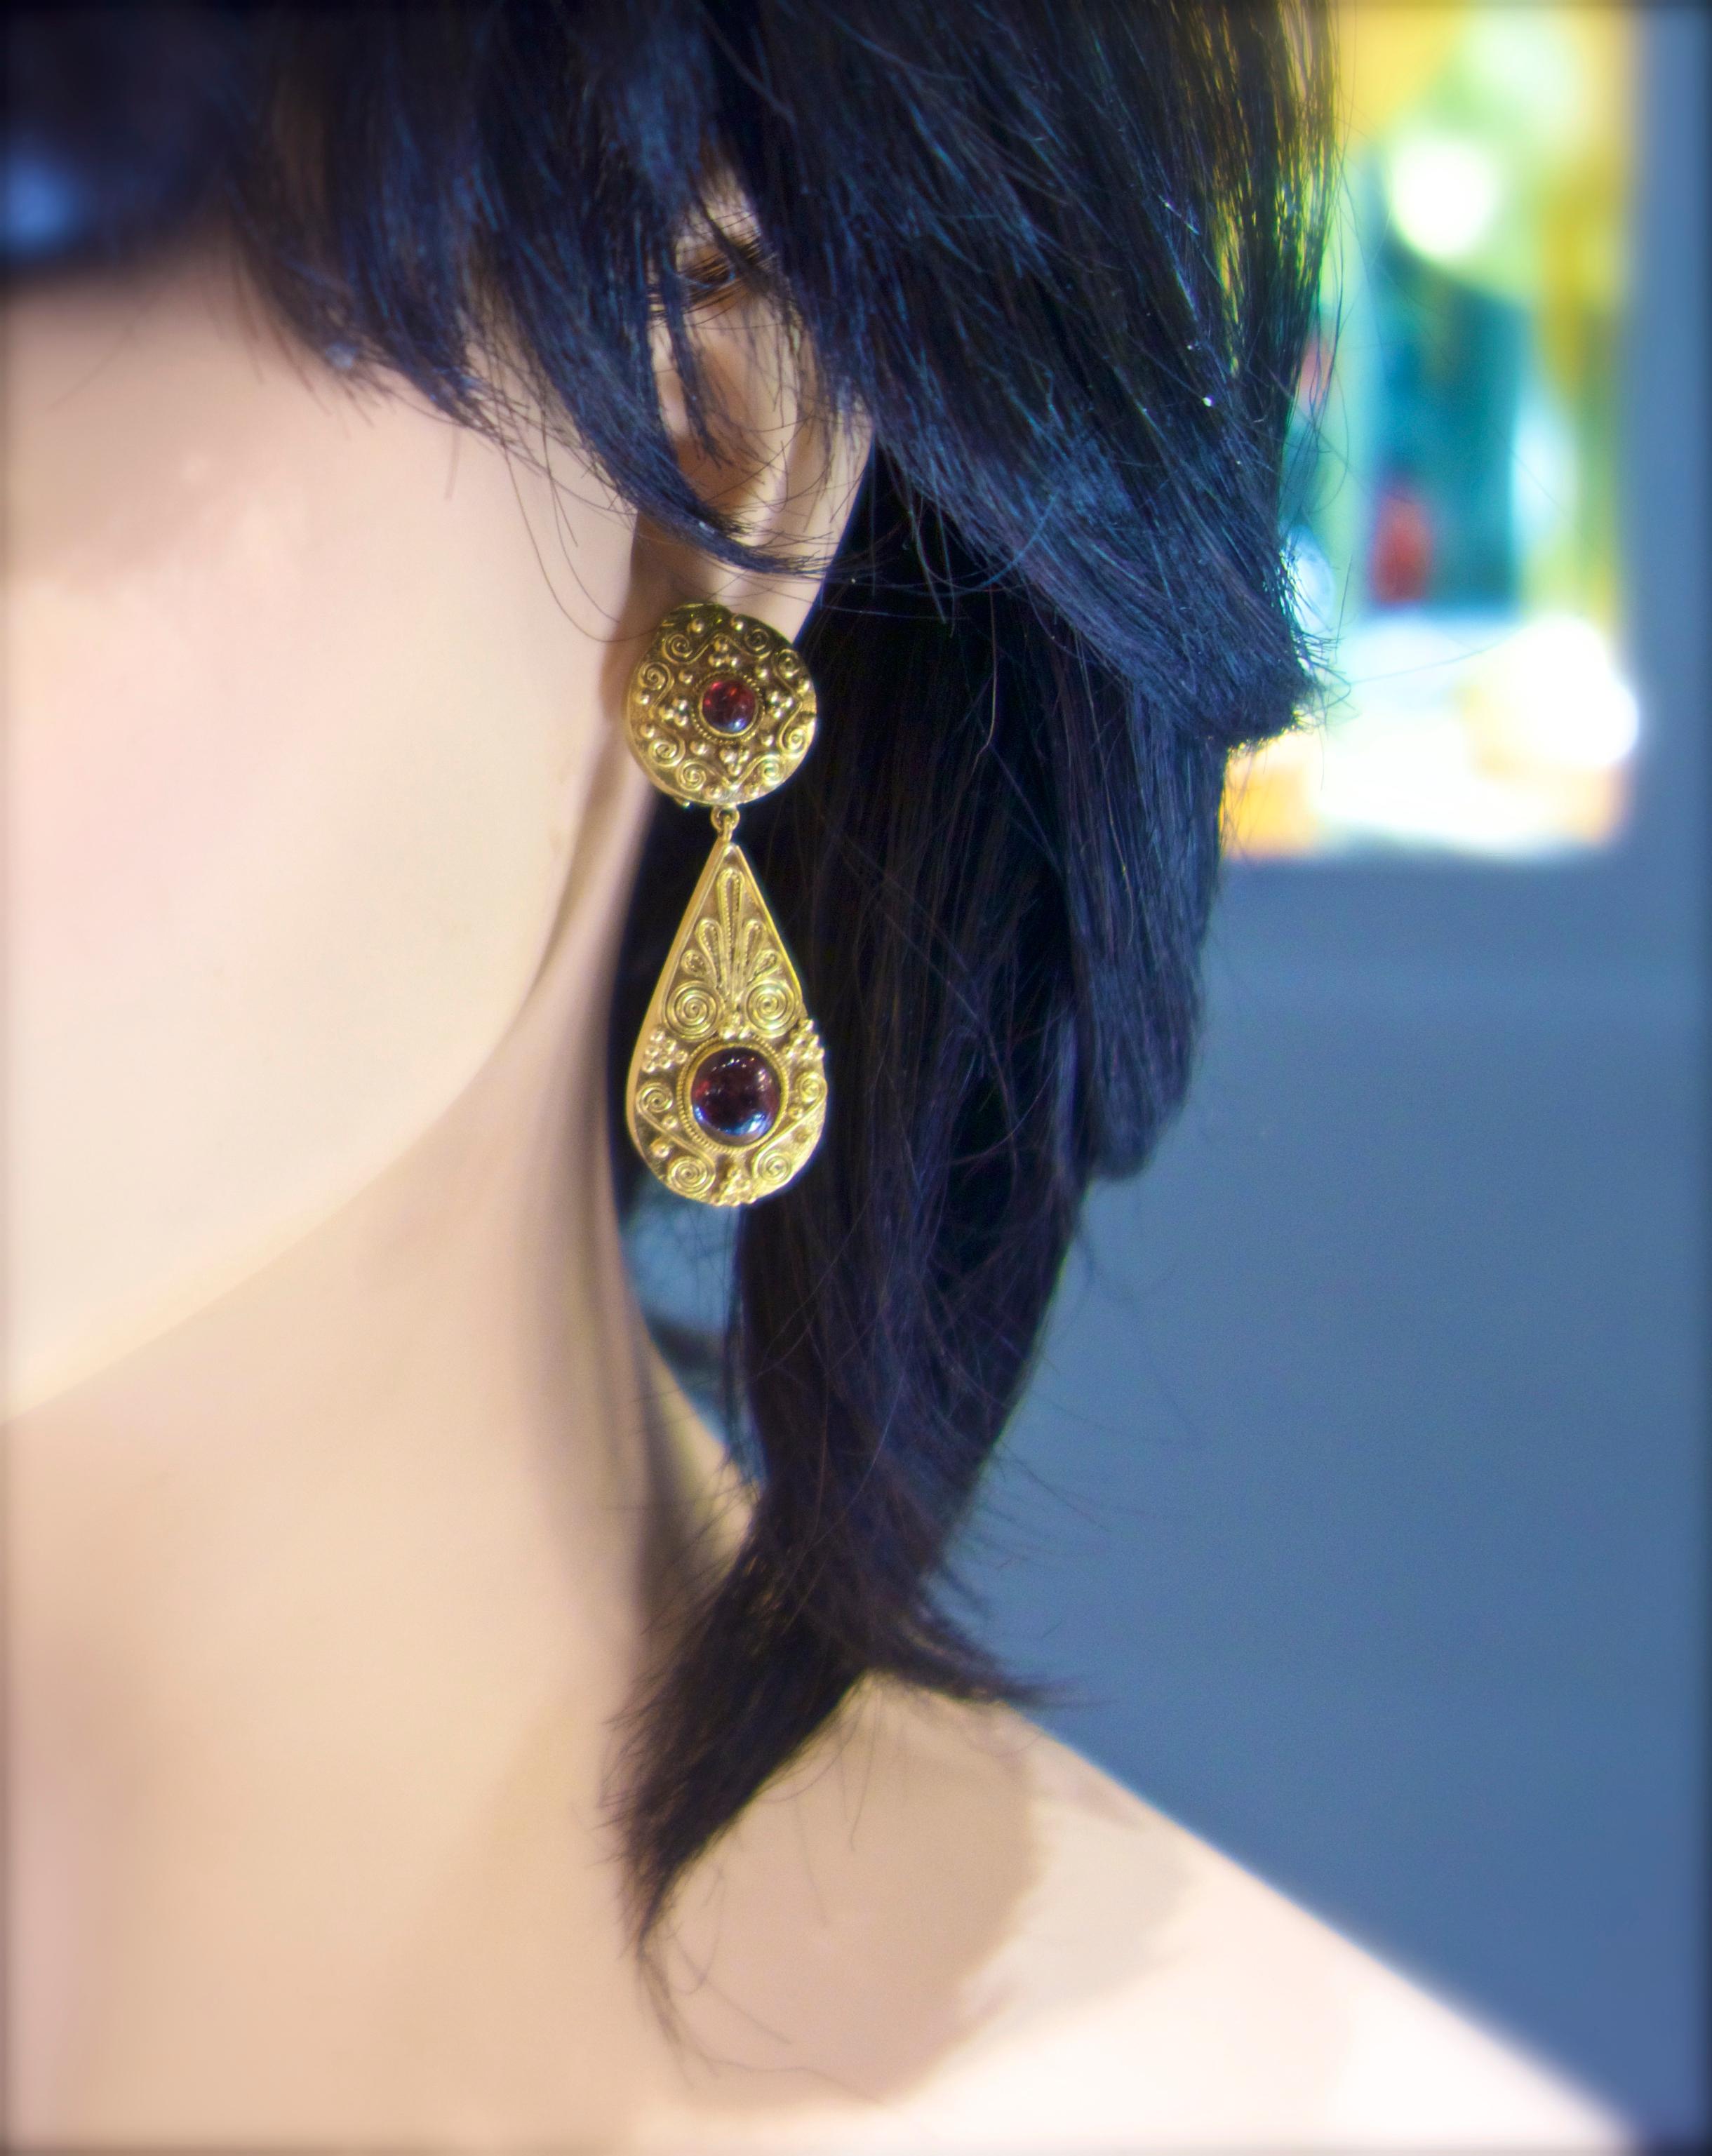 Women's or Men's Gold and Garnet Pendant Style Earrings